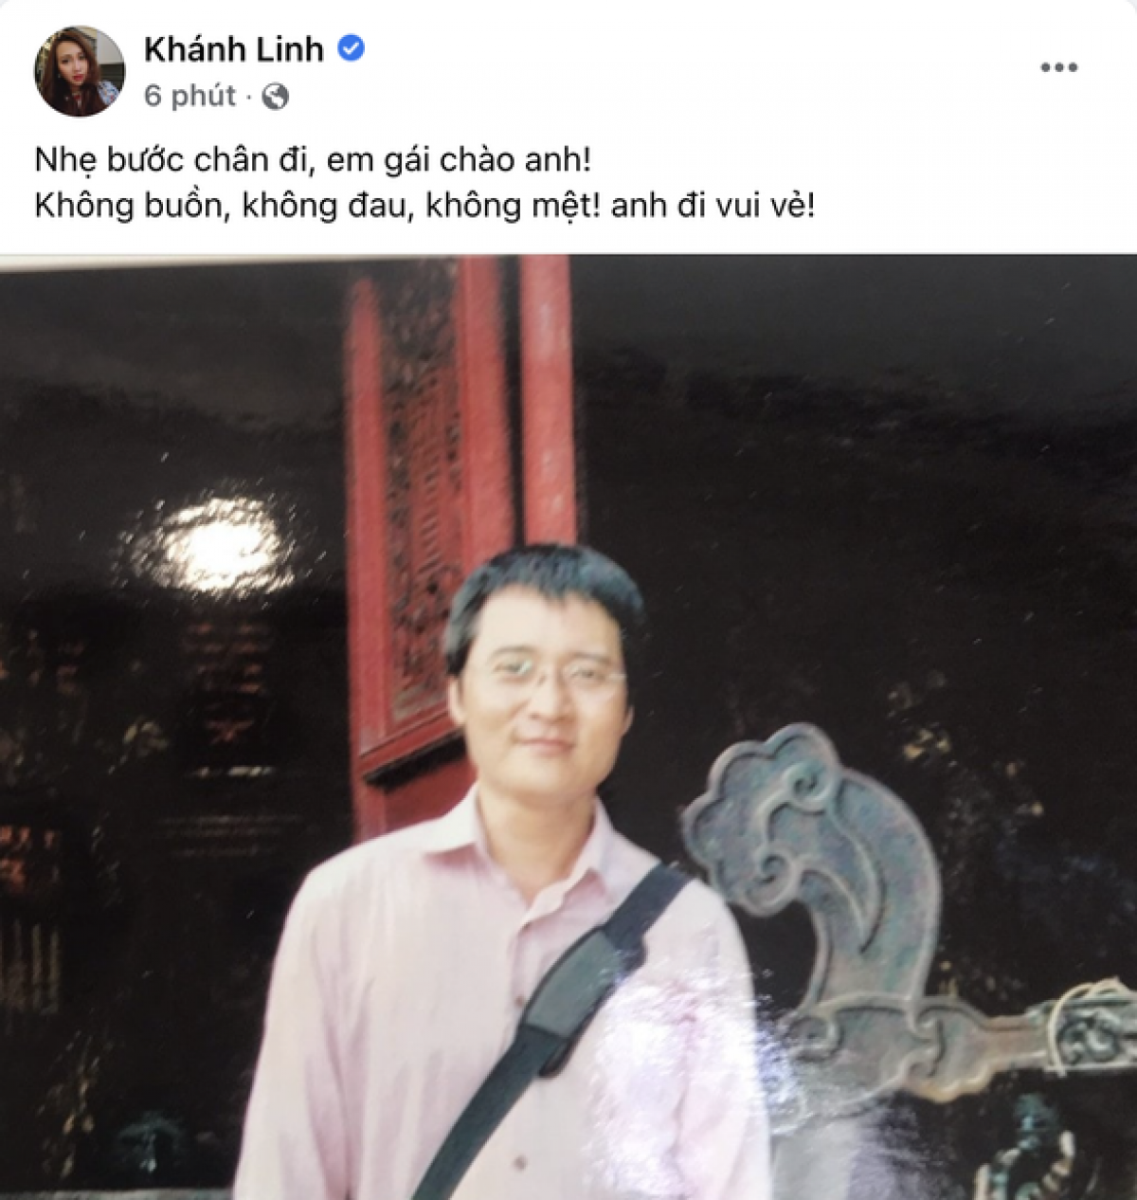 Ca sĩ Khánh Linh xót xa tiễn biệt anh trai trên trang cá nhân.